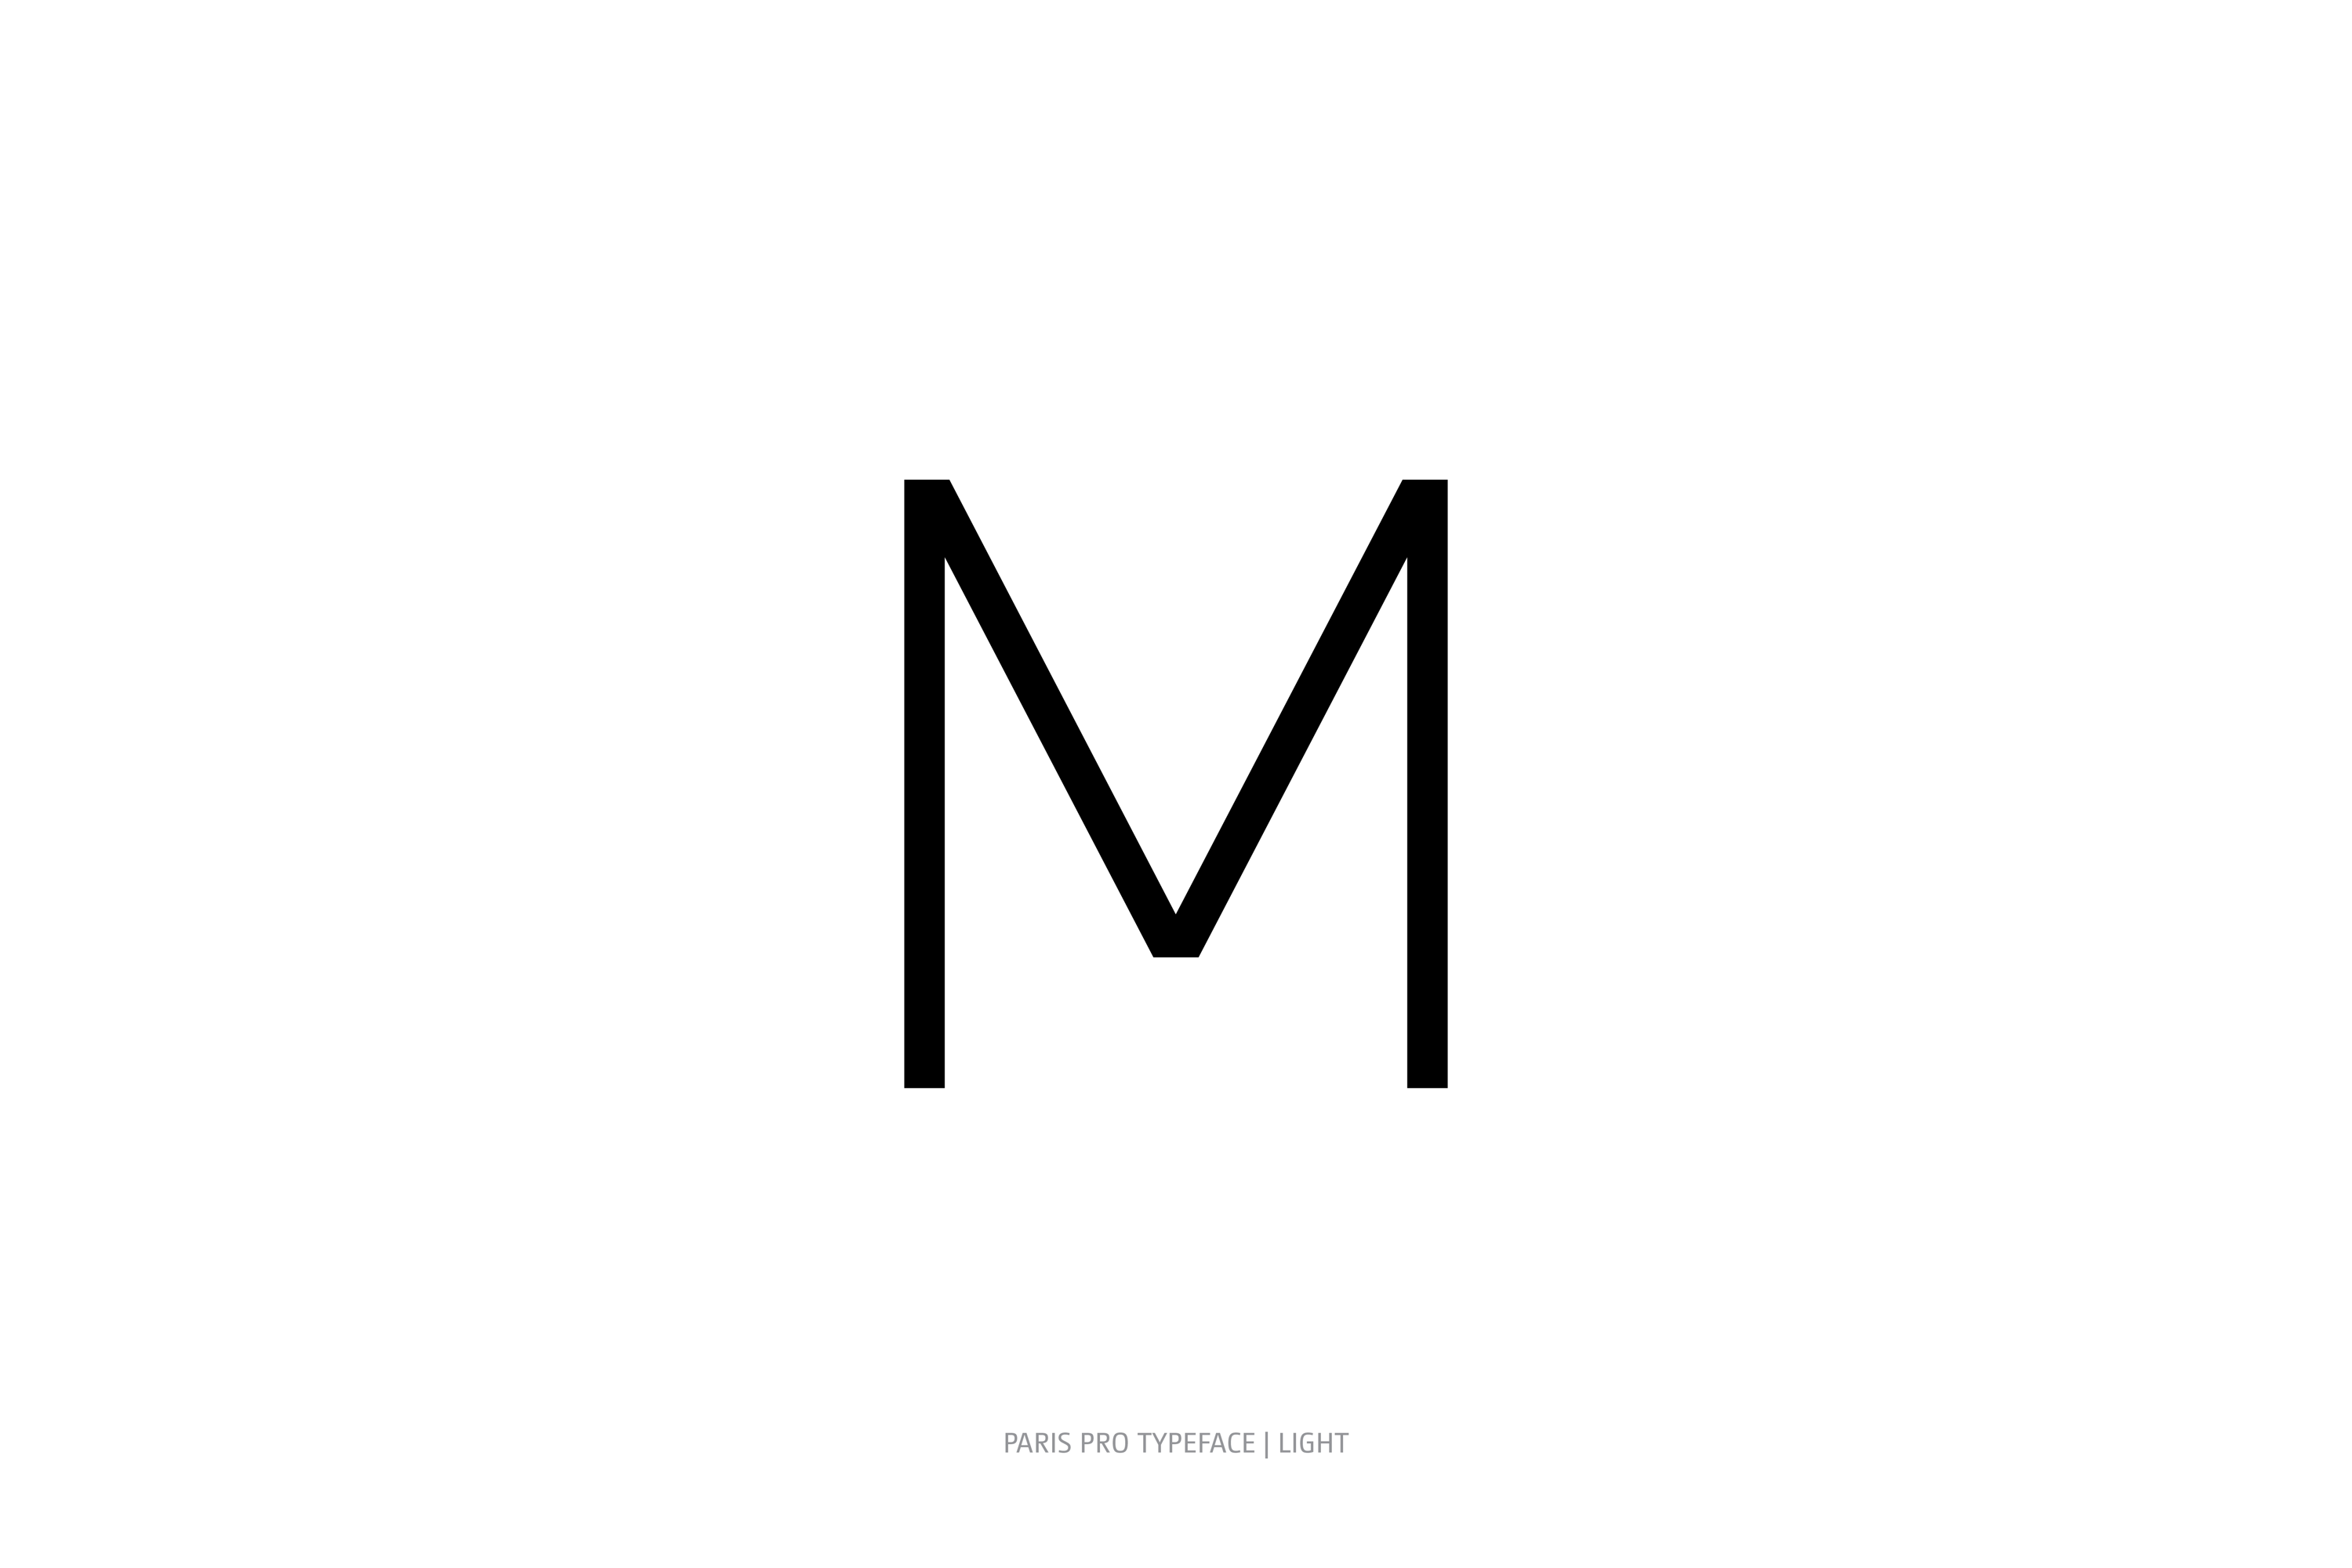 Paris Pro Typeface Light Style M